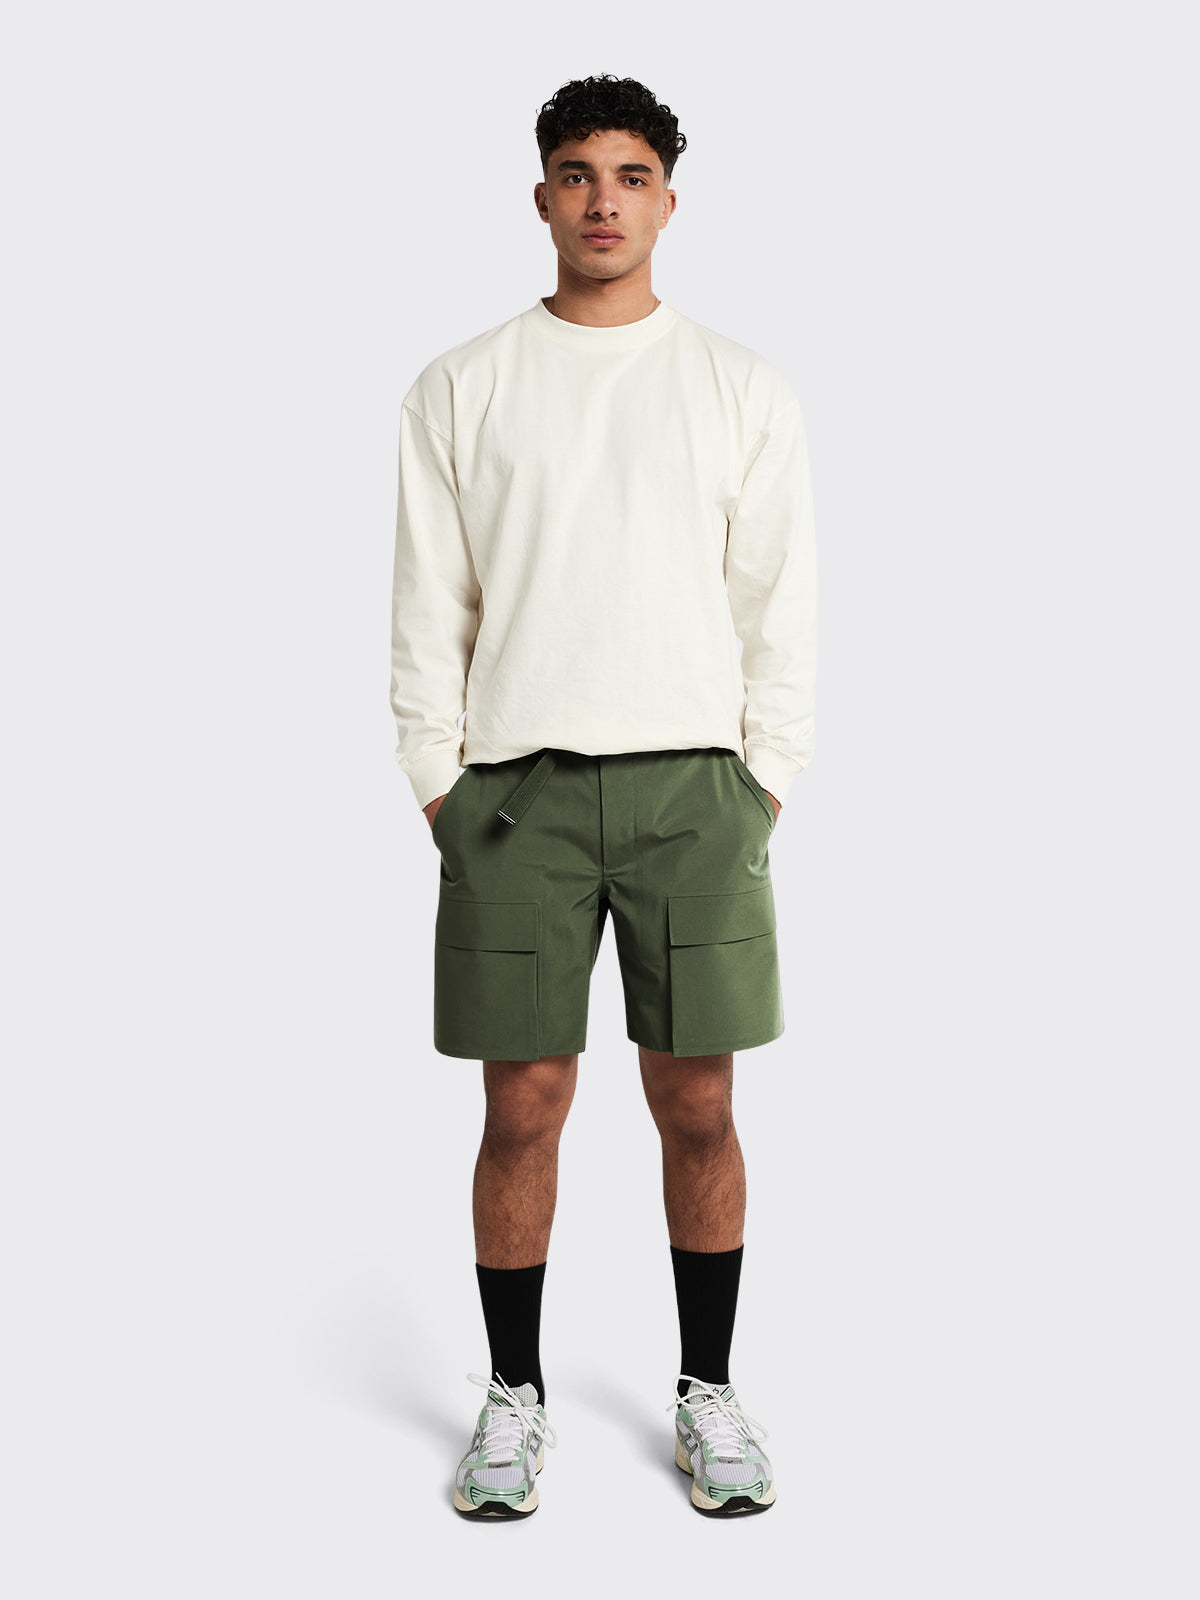 Man wearing Giske shorts by Blæst in Dusty Green